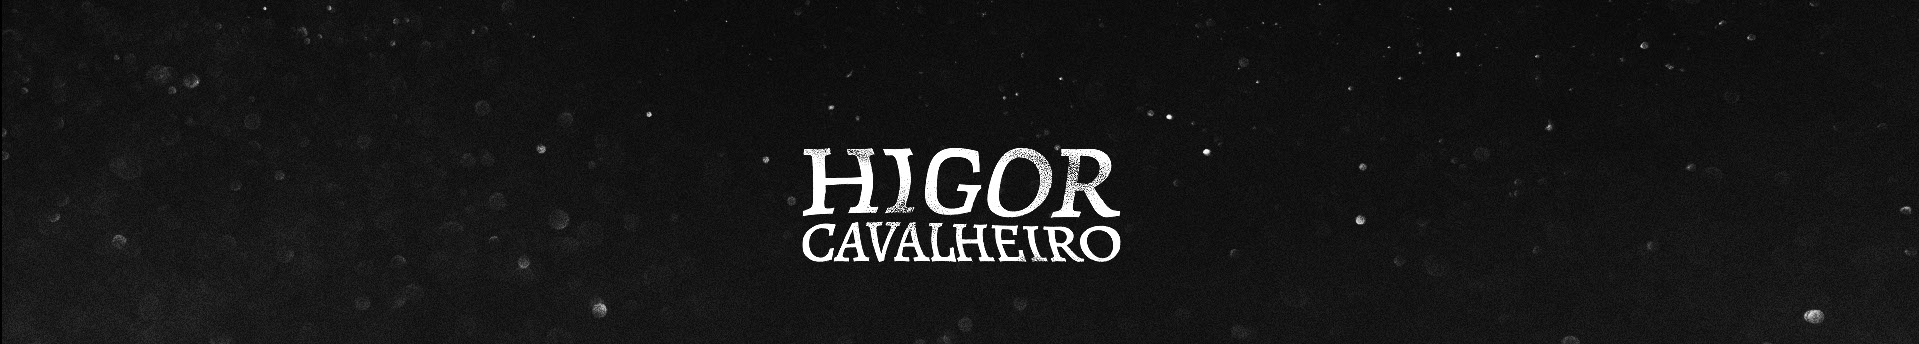 Higor Cavalheiro's profile banner